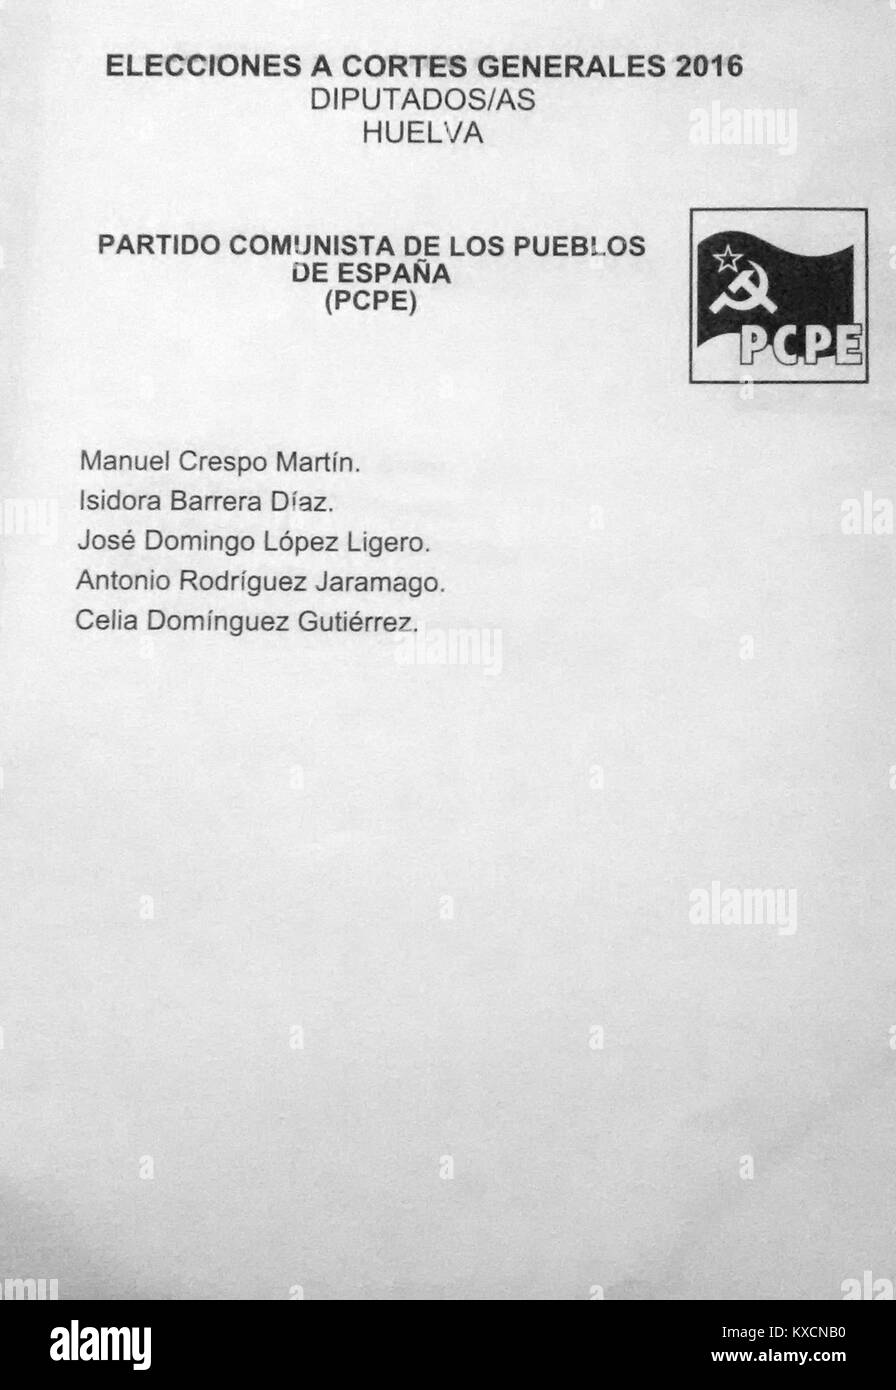 2016 Spanish General Elections Ballot - Huelva - Partido Comunista de los Pueblos de España (PCPE) Stock Photo